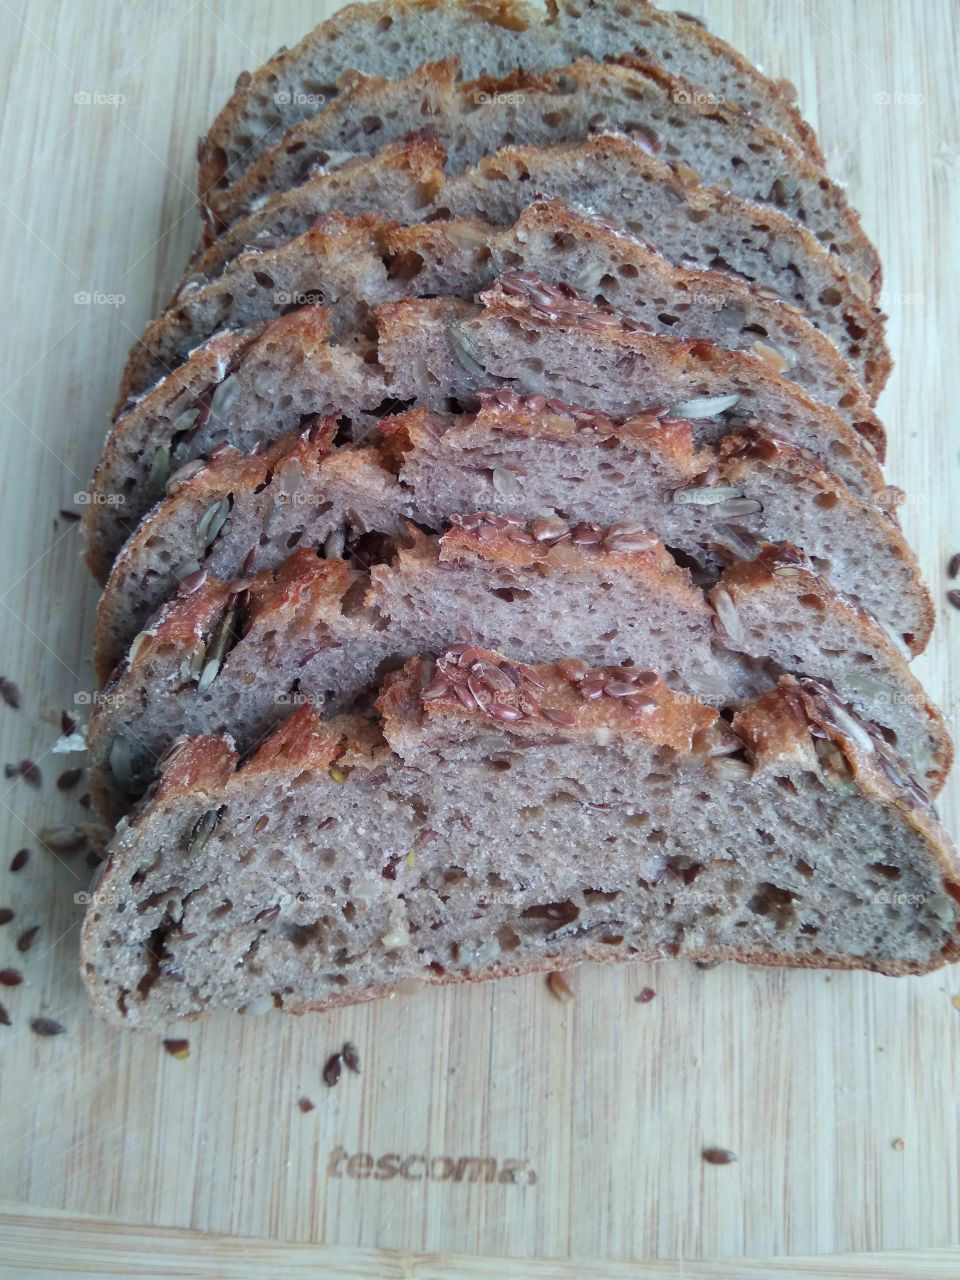 Зерновой хлеб.
Grain bread